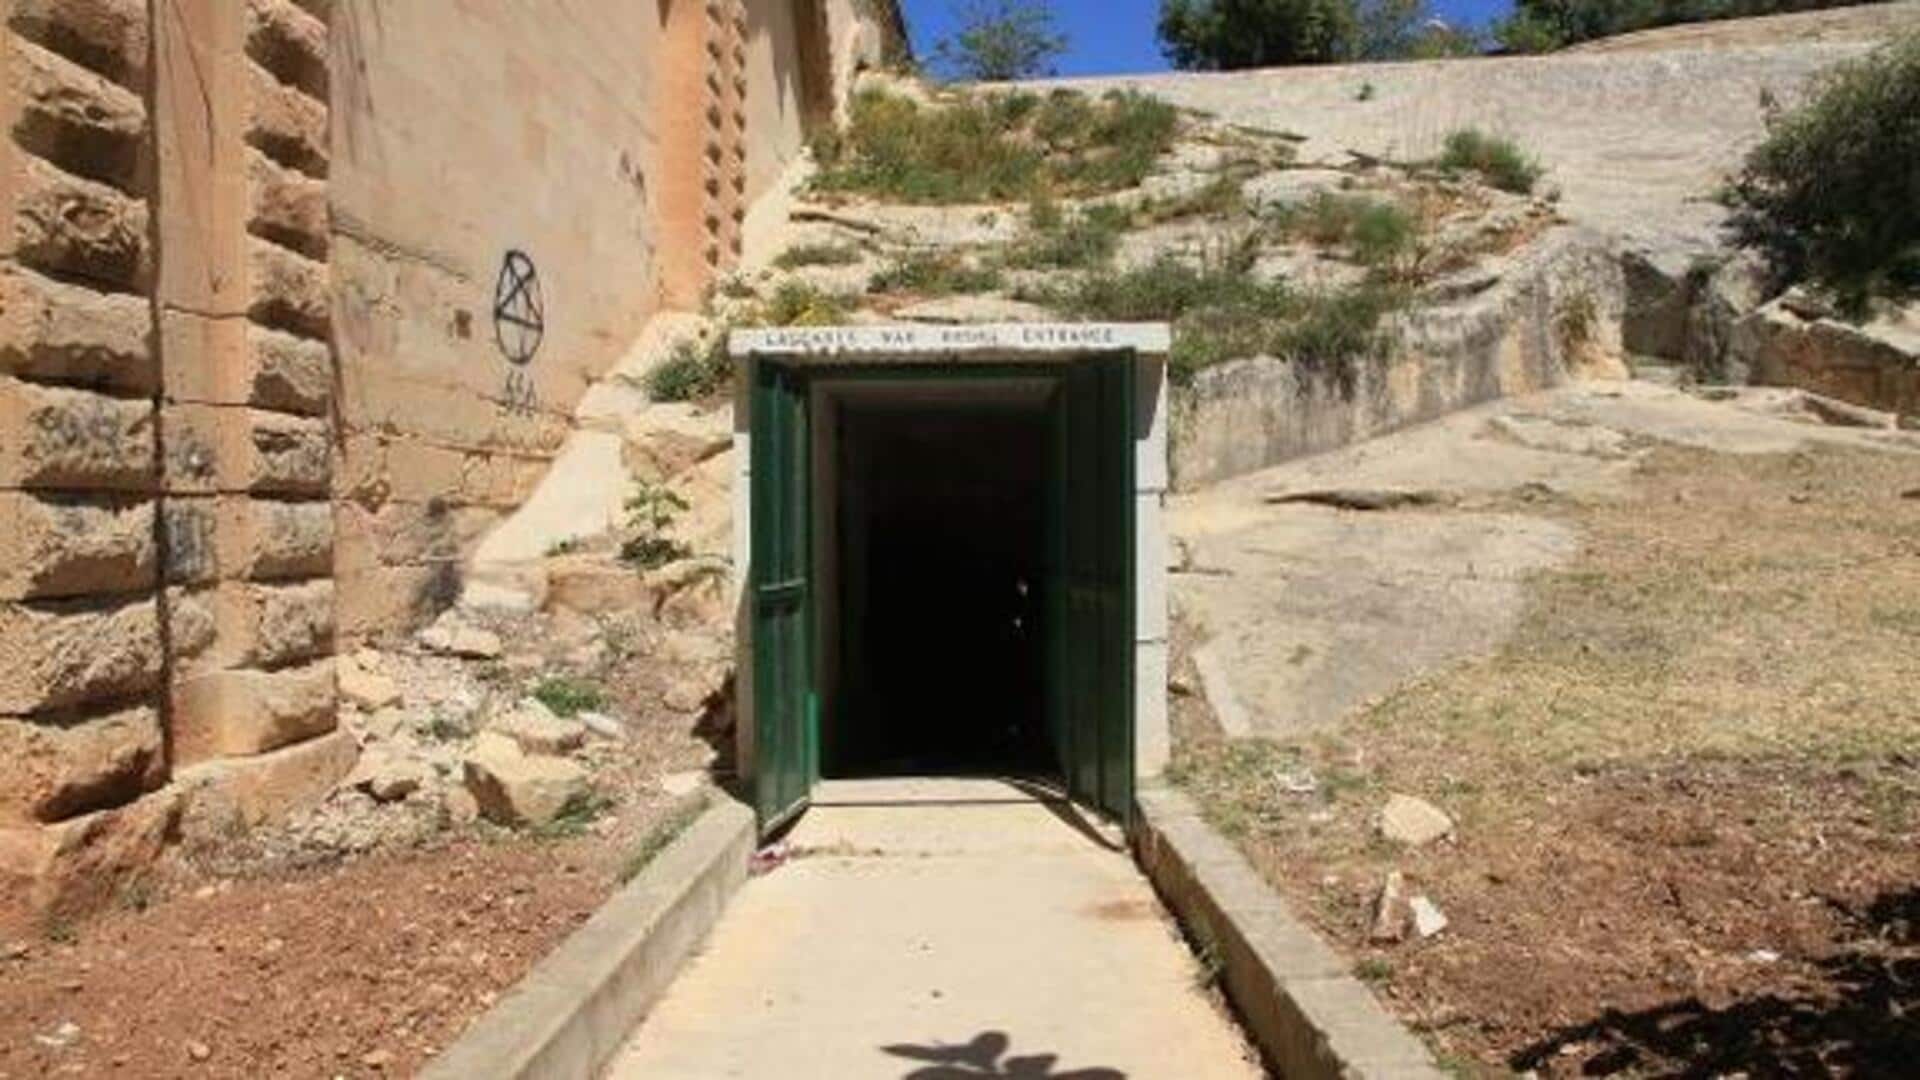 Make your way to Valletta's secret tunnels